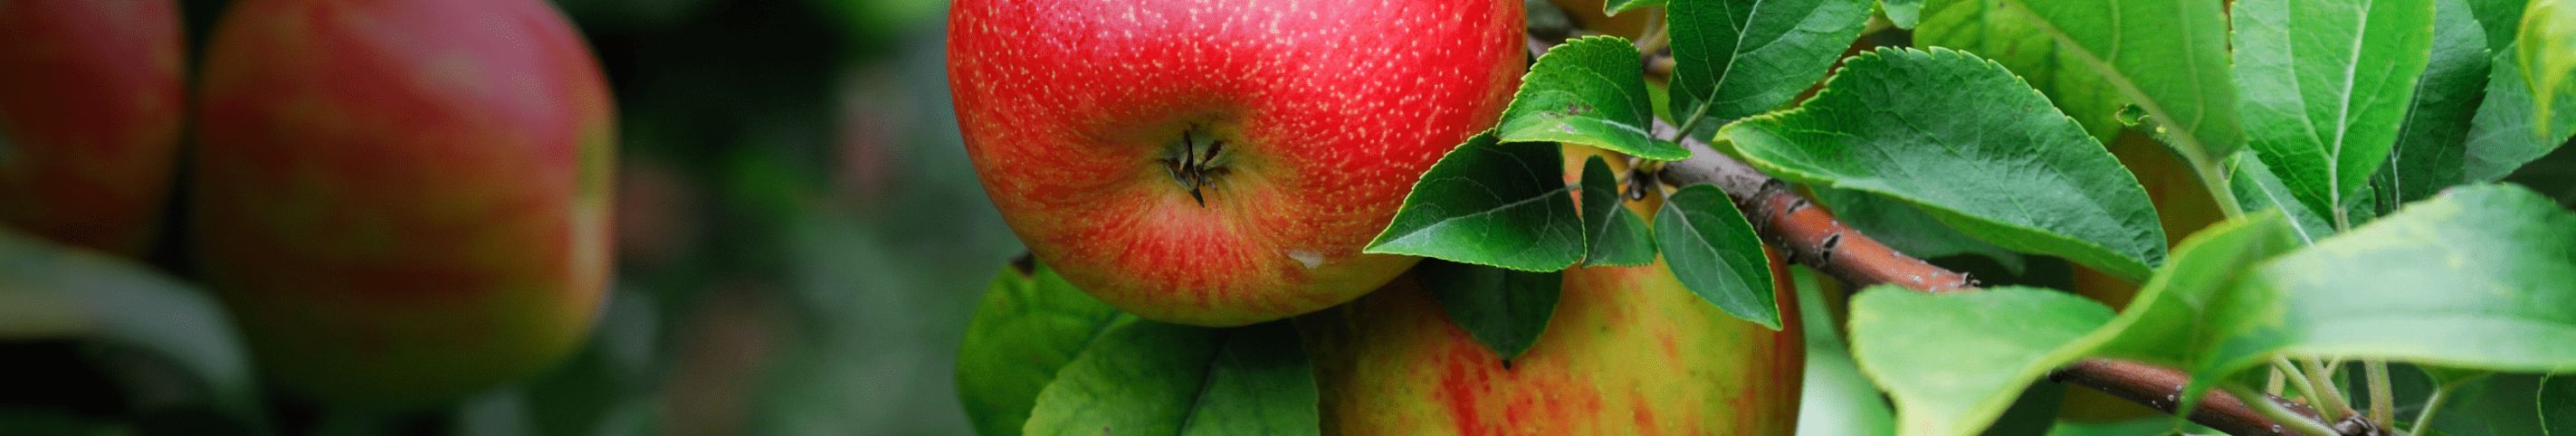 Bio-Apfelbaum \'Alkmene\' Herbstapfel kaufen - Plantura Shop | Obstbäume & Gemüsepflanzen